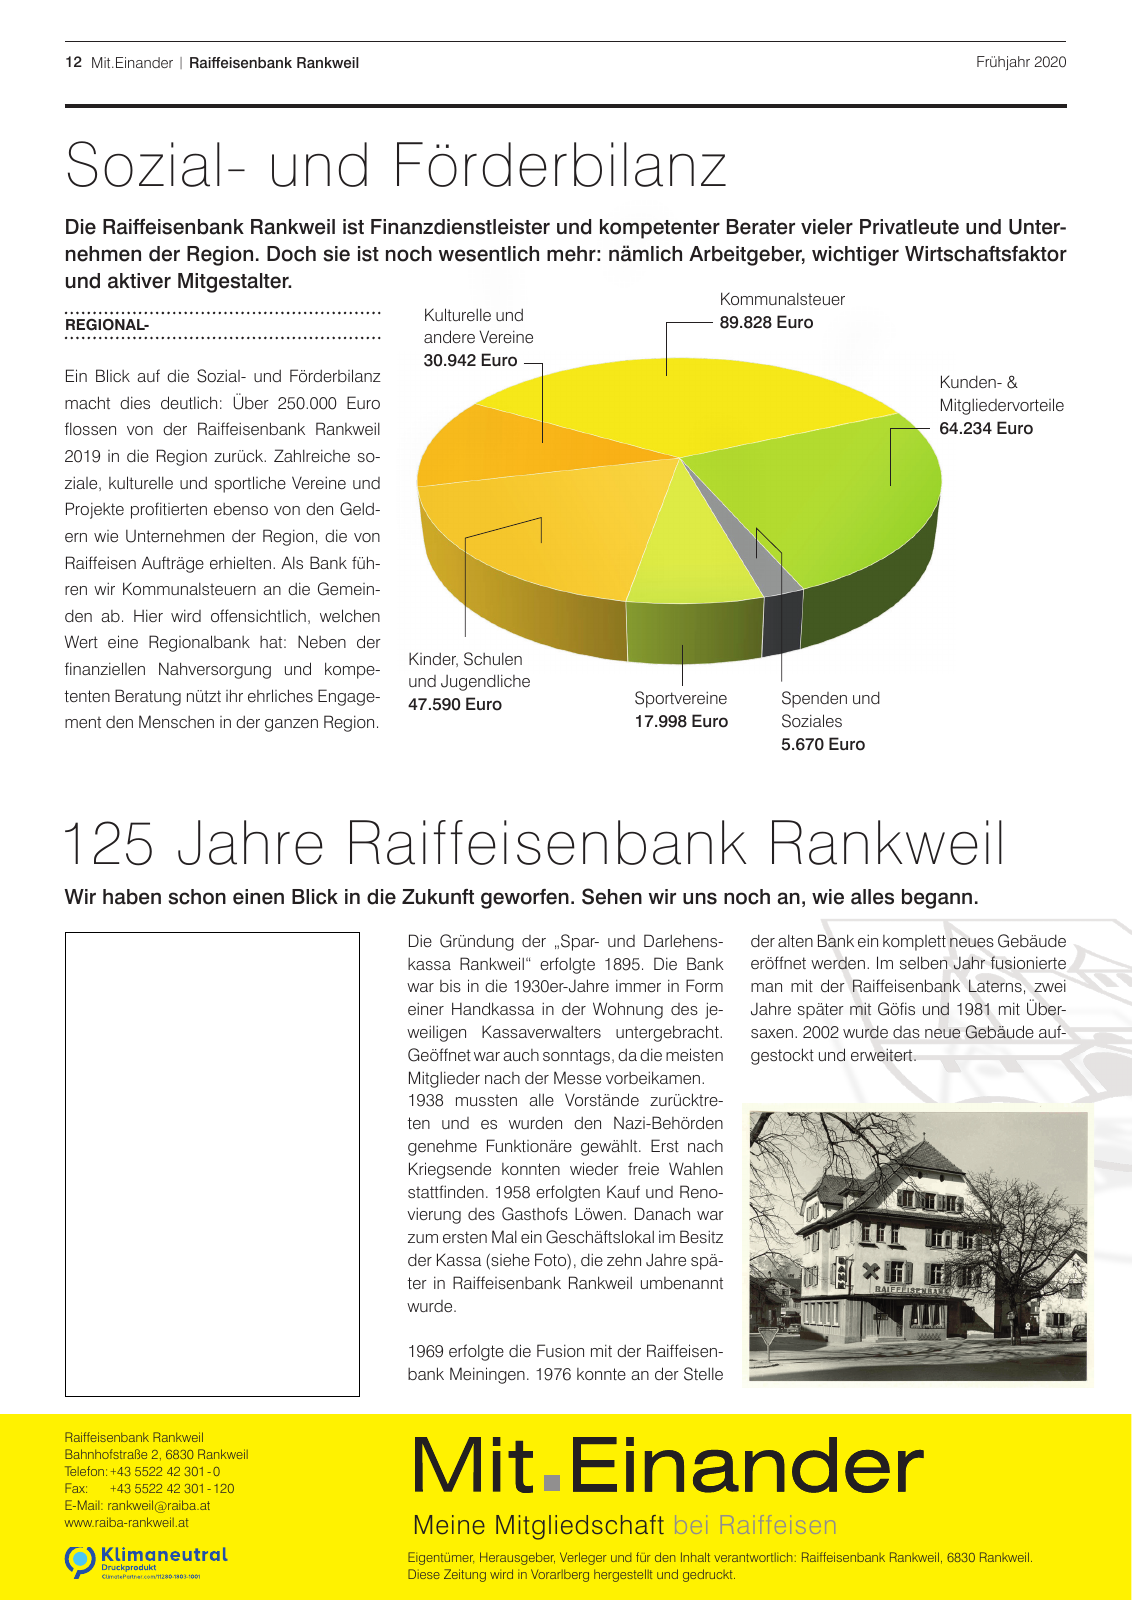 Vorschau Mitgliederzeitung RB Rankweil Frühjahr 2020 Seite 12